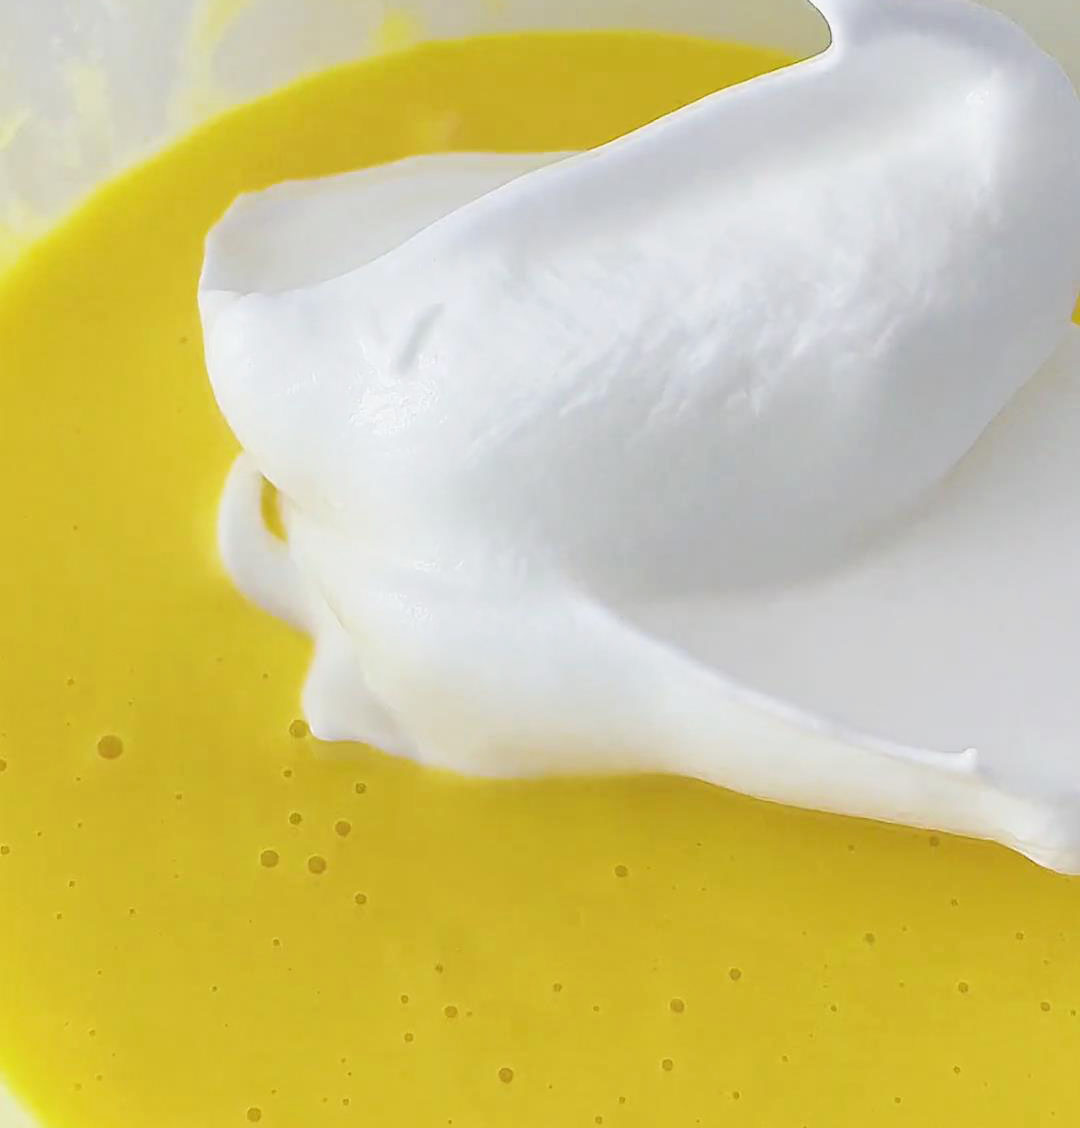 Combine half of the egg white batter with the egg yolk batter